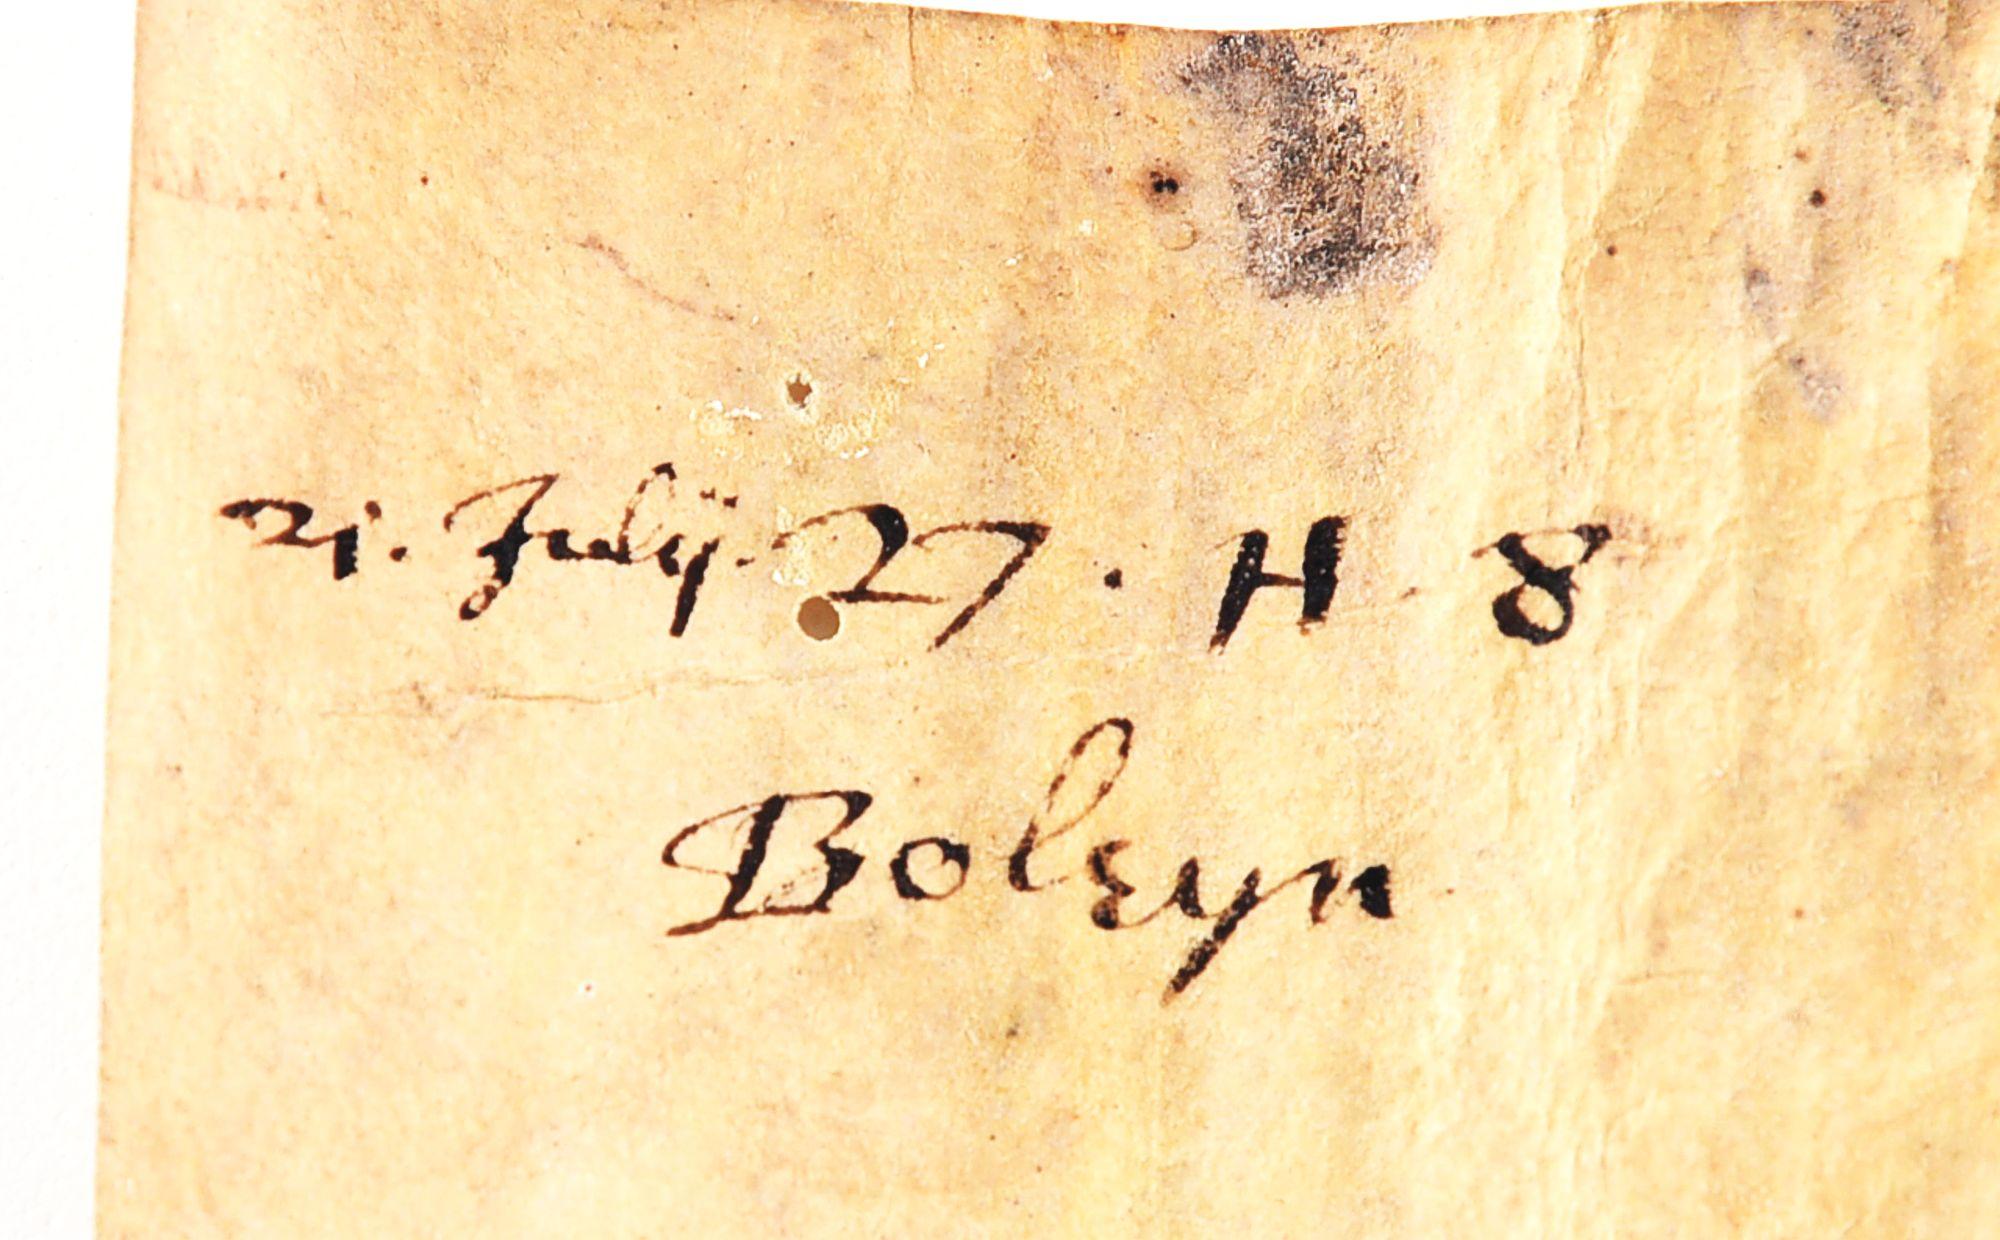 1535 TRANSCRIPT DOCUMENT TO GEORGE BOLEYN, EX-LATTIMER.